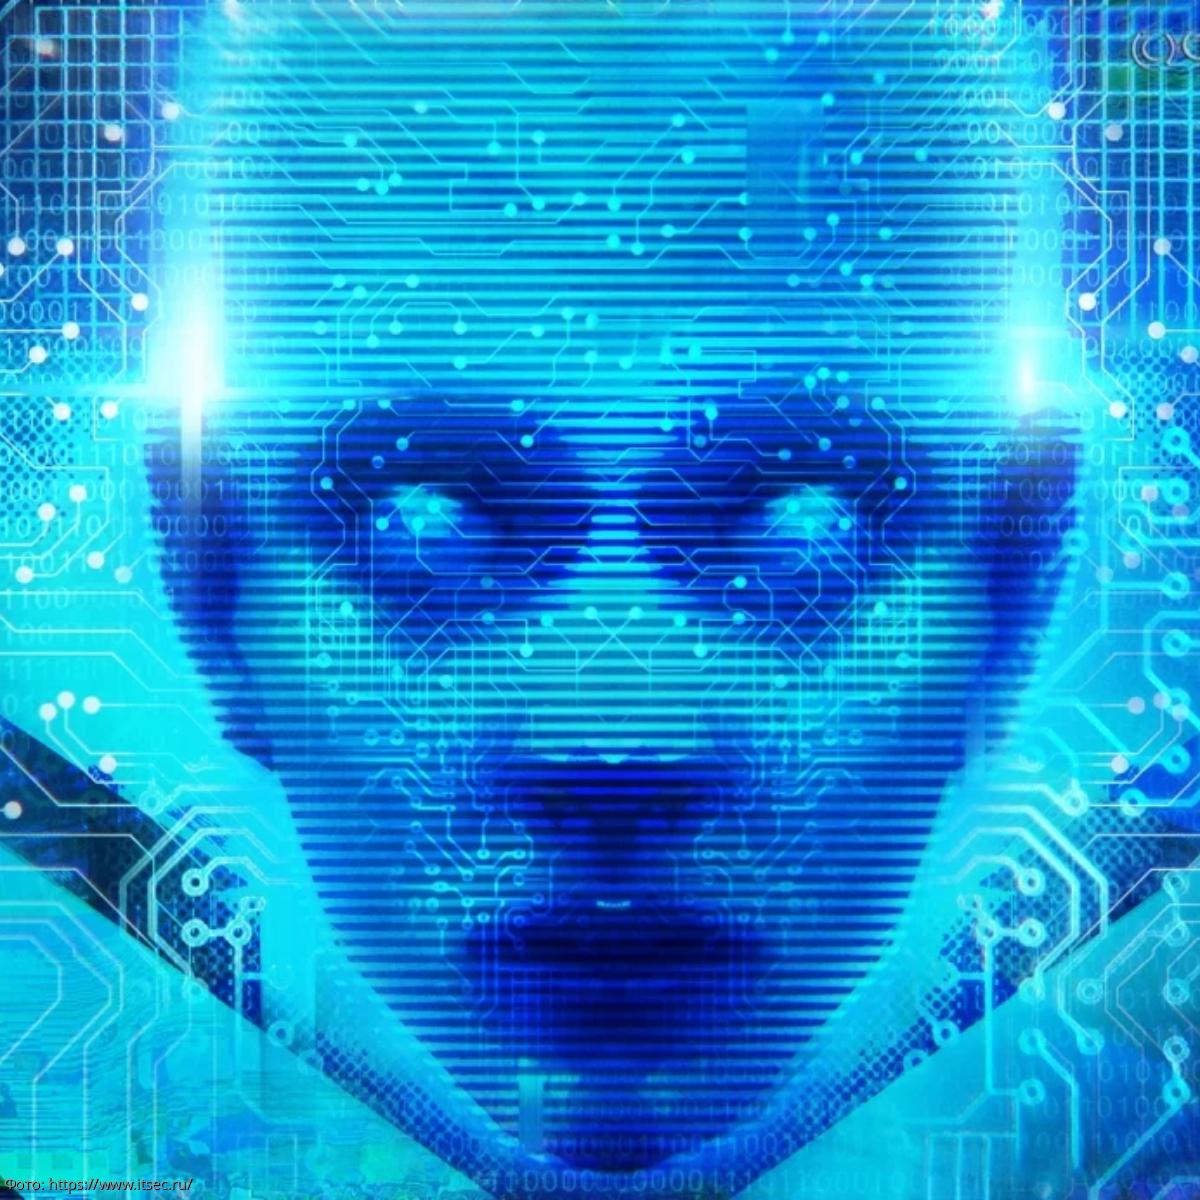 1 проблема искусственного интеллекта. Проблемы искусственного интеллекта. Технологии ИИ. Робот лингвист.